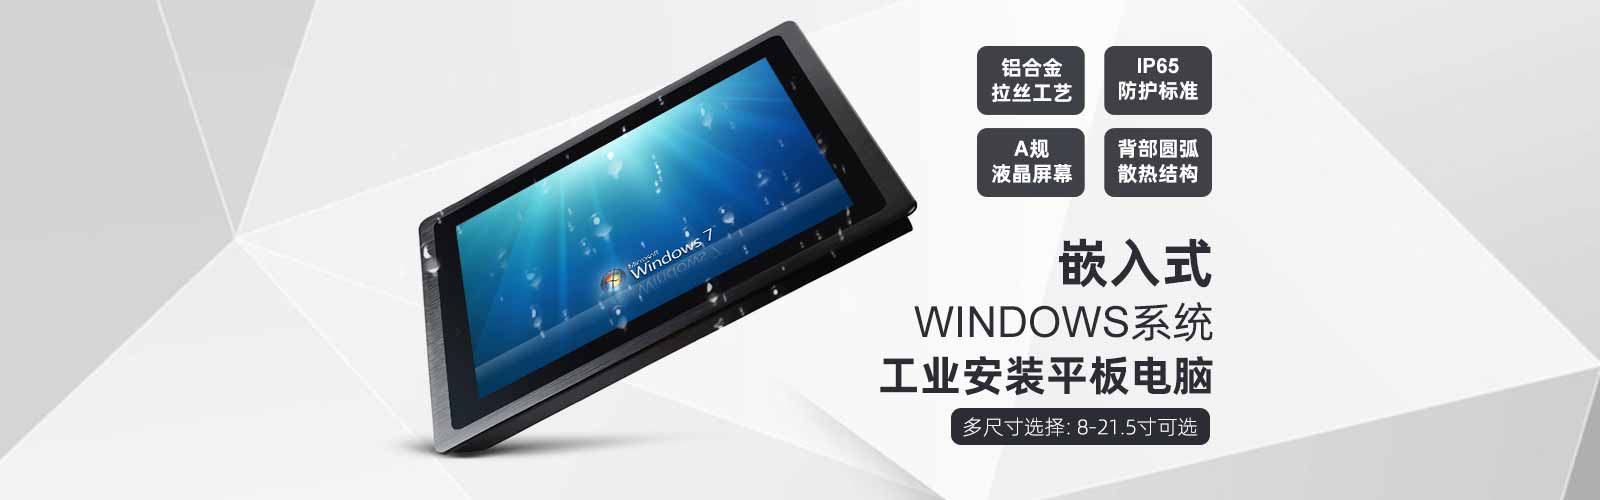 研维嵌入式windows系统工业安装平板电脑，铝合金拉丝工艺、IP65防护、A规液晶屏幕、背部圆弧散热结构，8-21.5寸可选